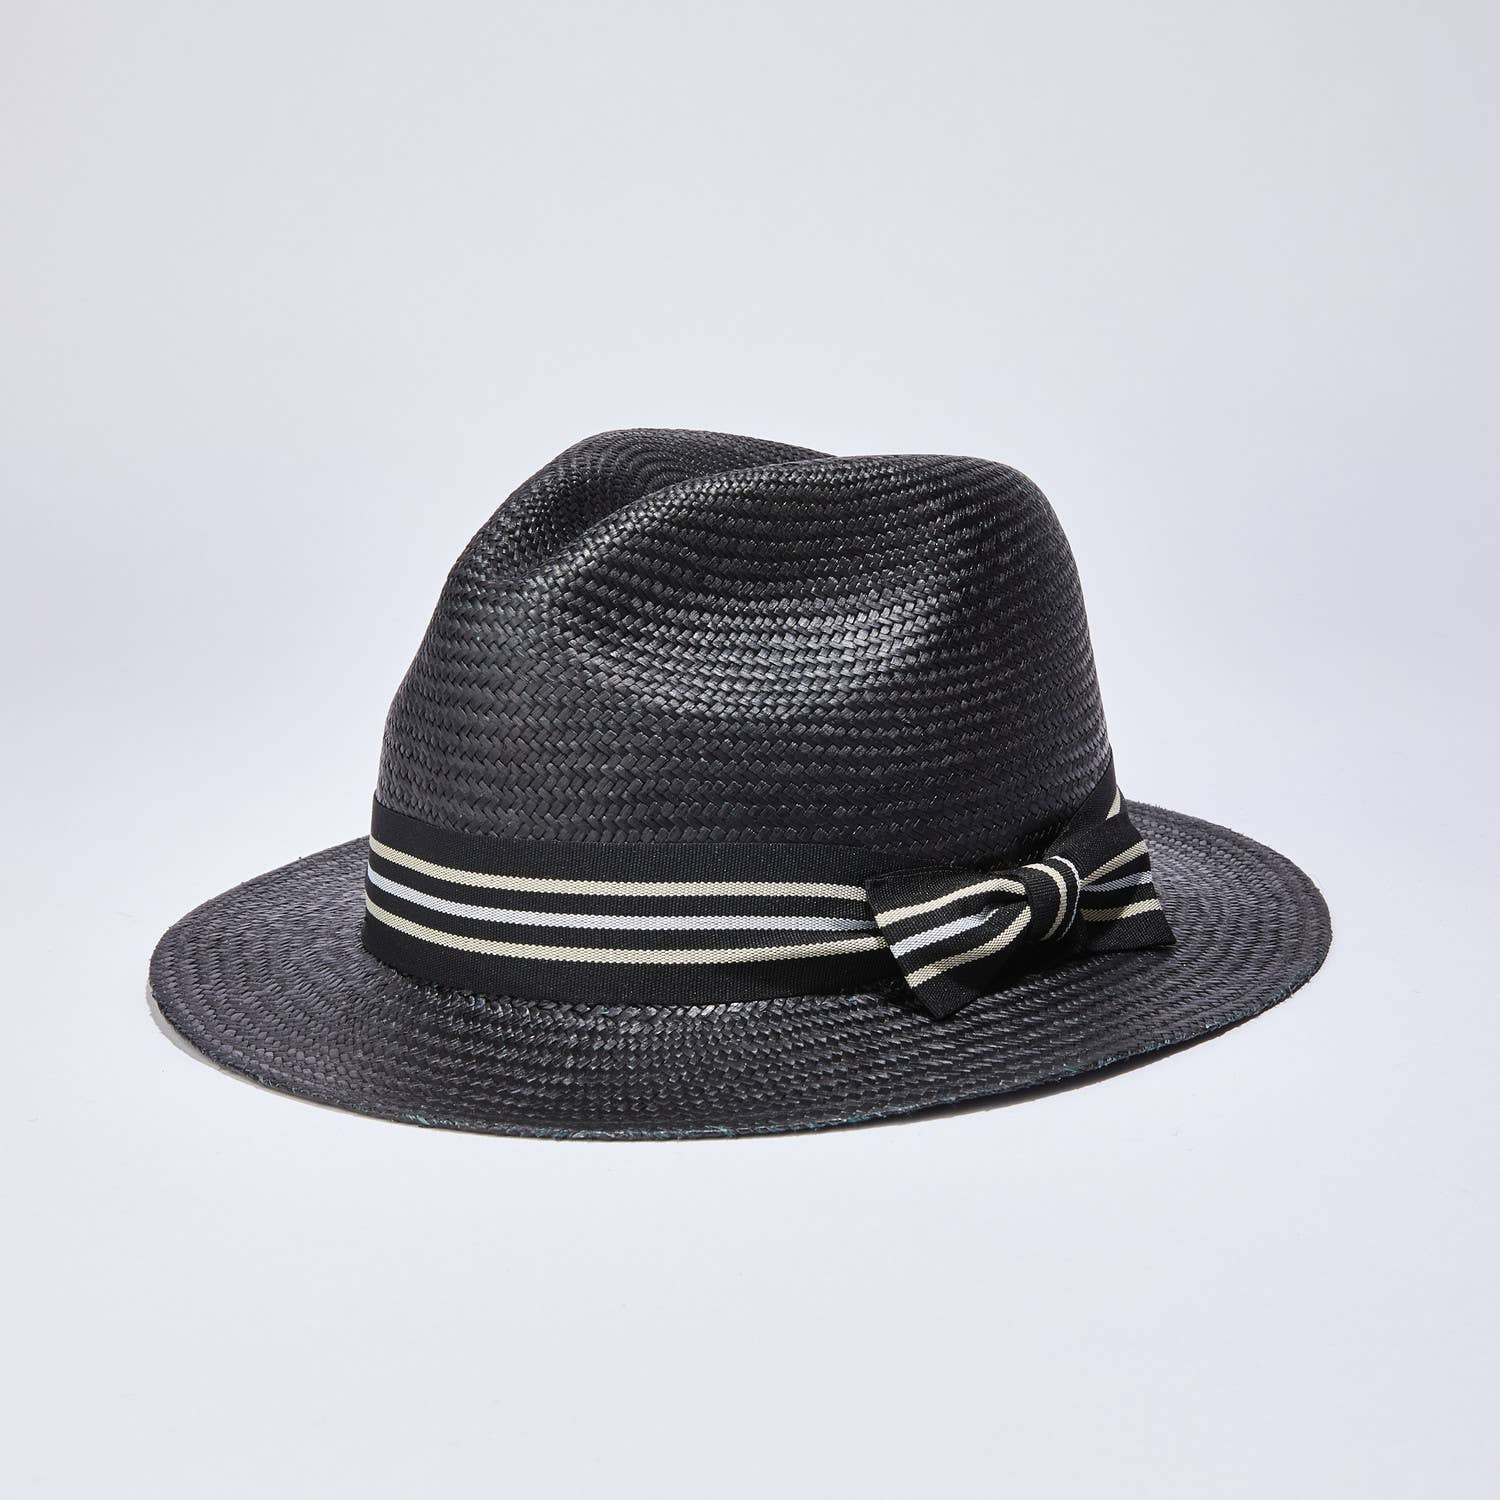 Metro Black Urban Panama Hat - Unisex - Nubian Lane Hat Co.